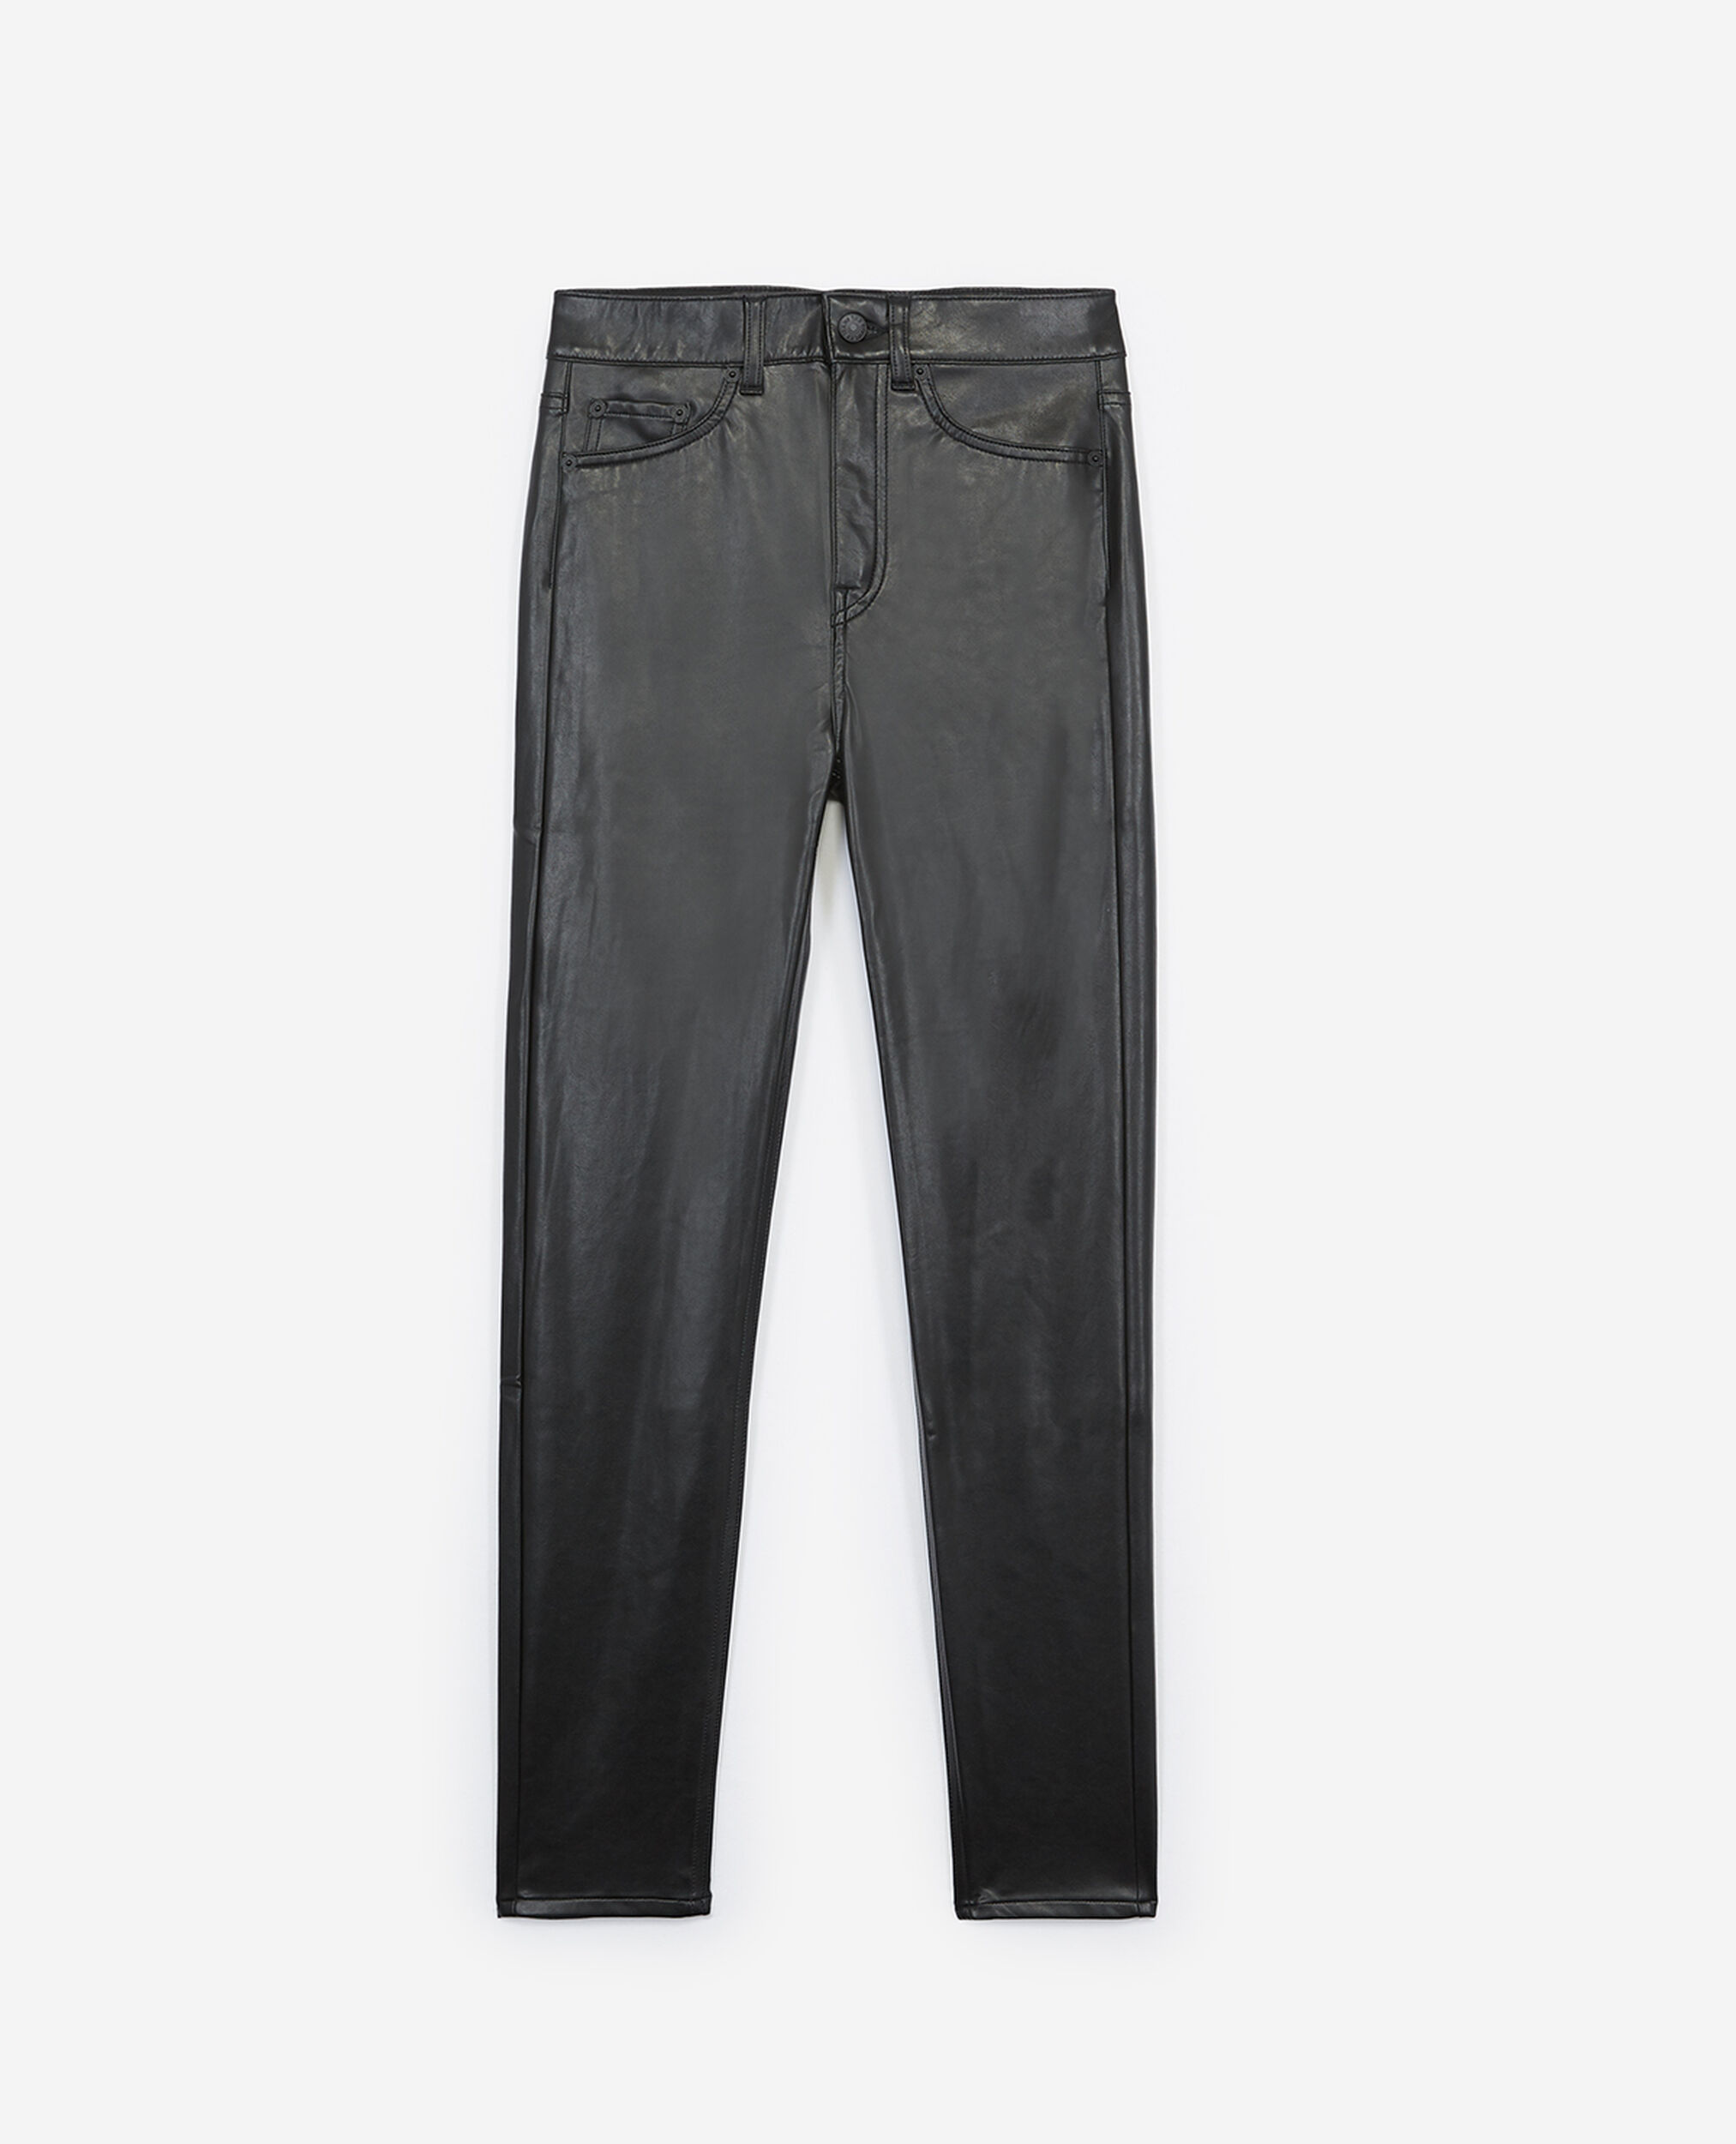 Pantalon noir ajusté style jean, BLACK, hi-res image number null